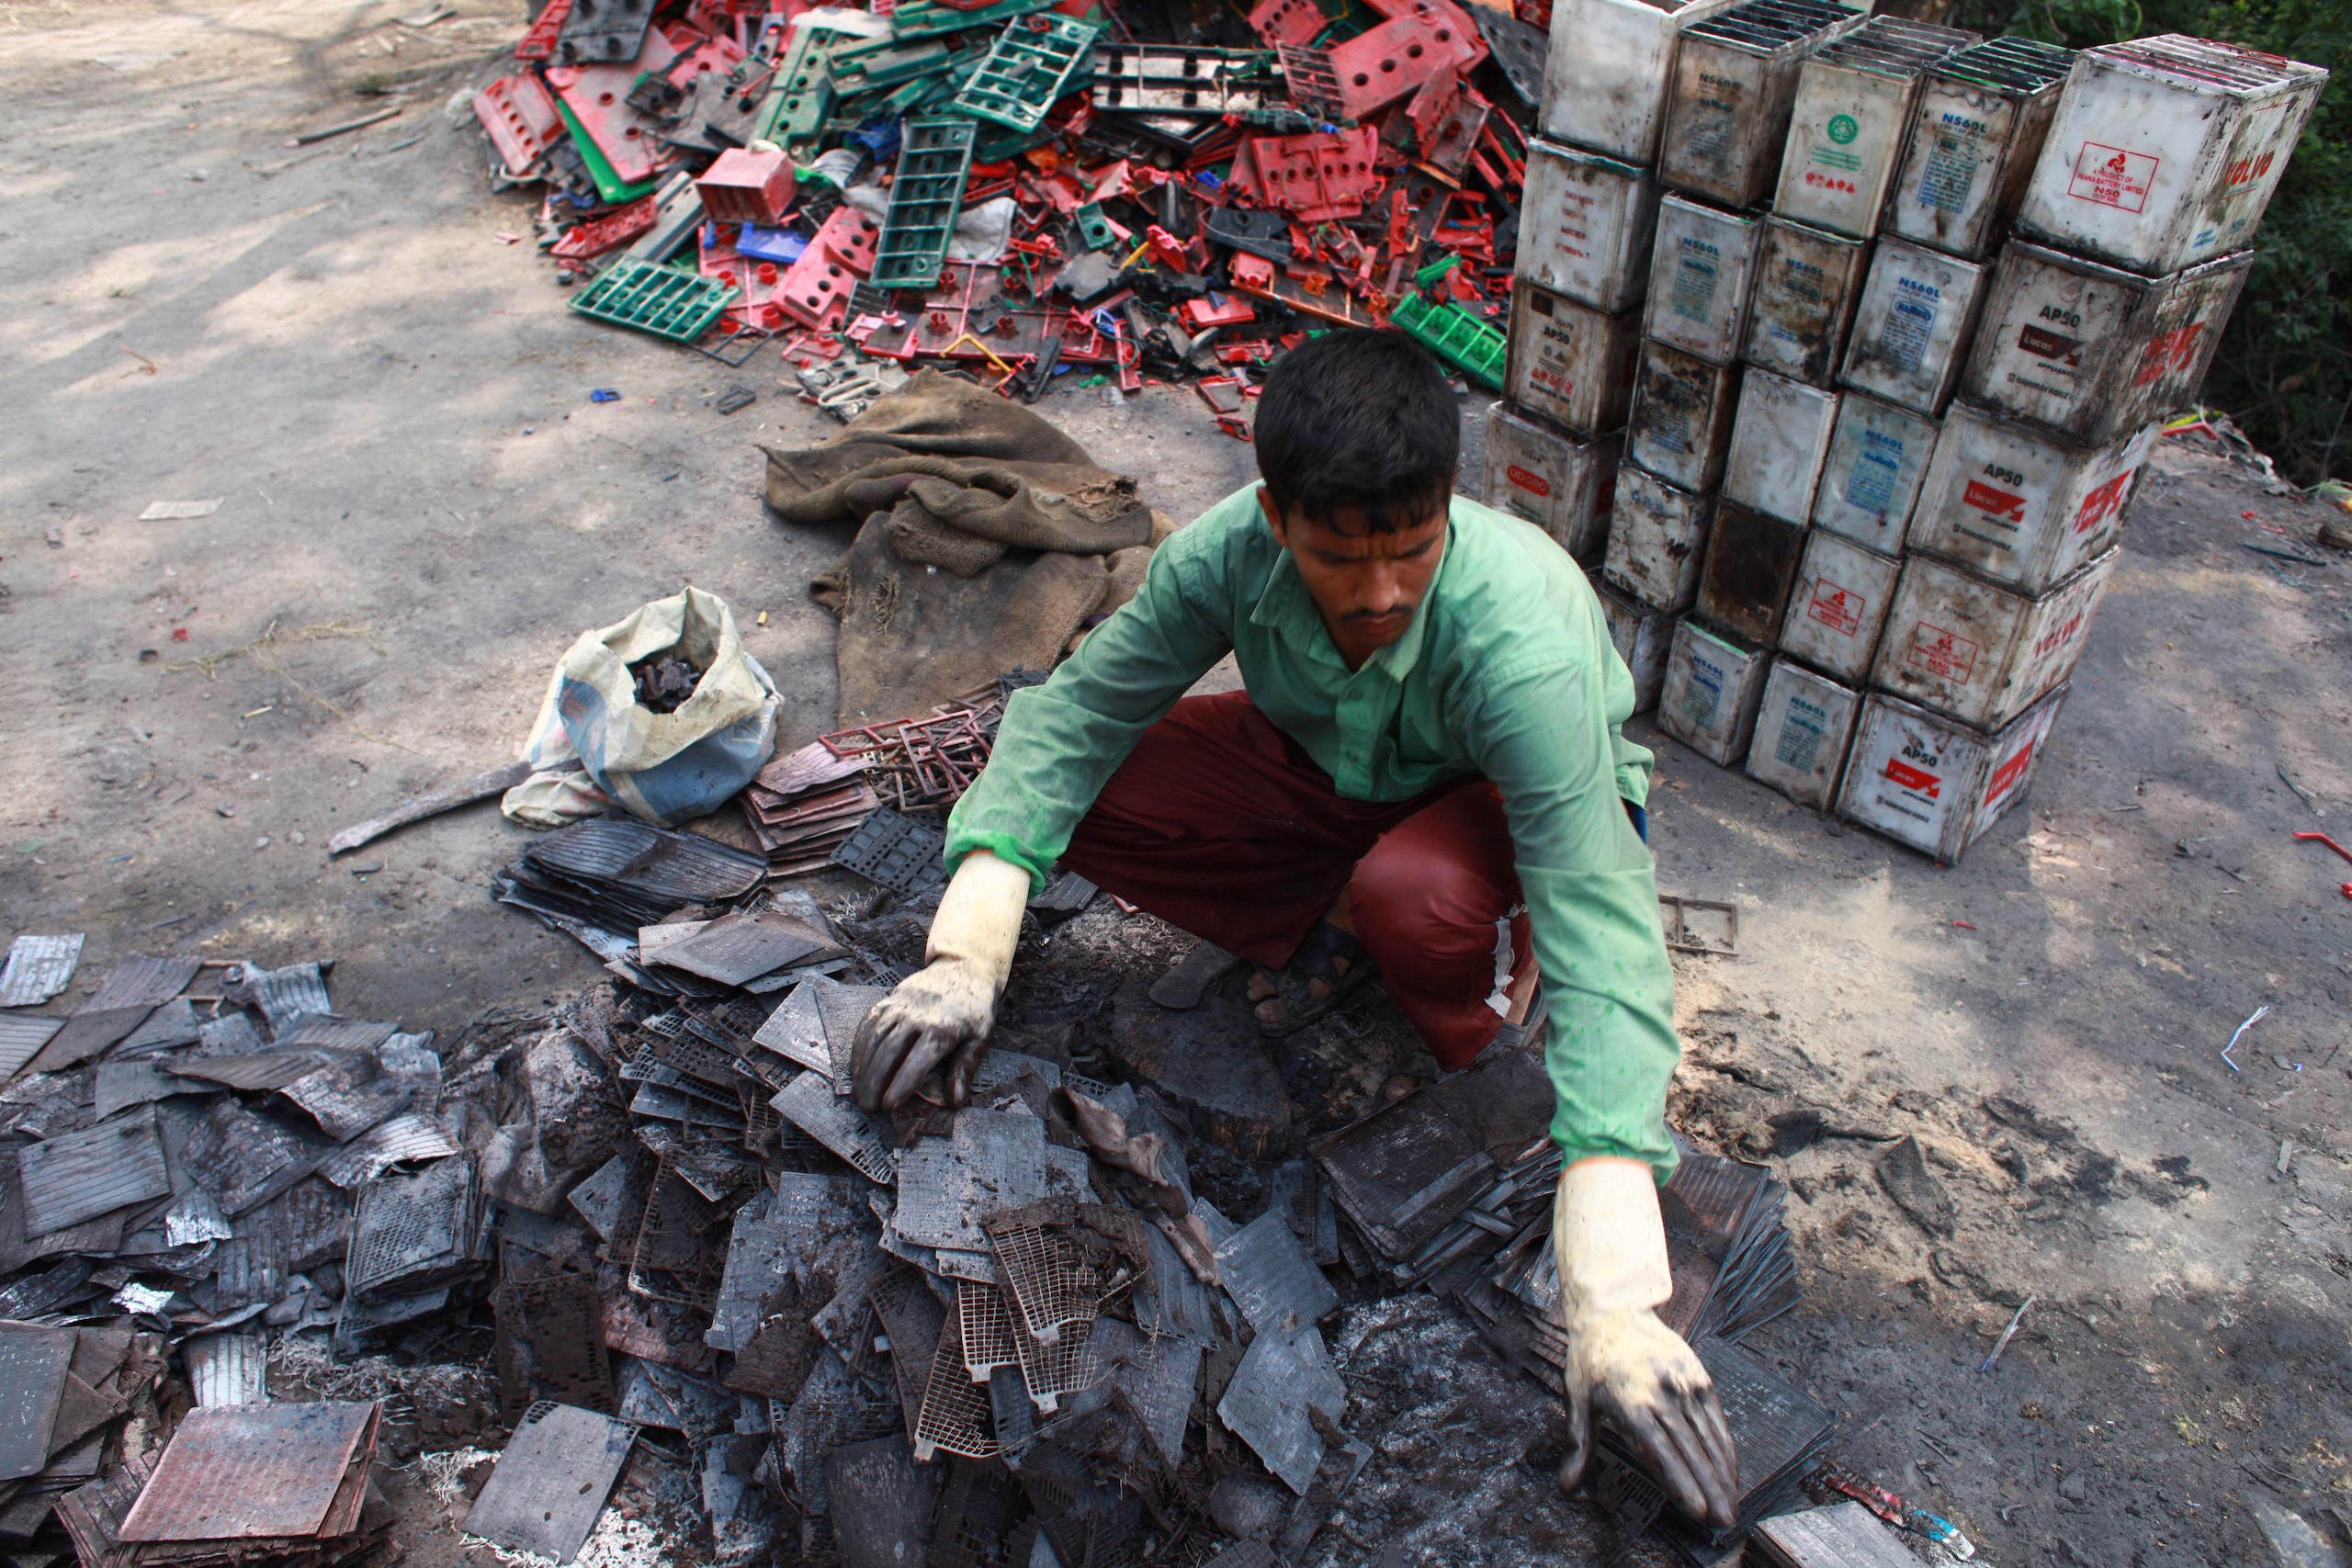 A man sorts batteries in Dhaka, Bangladesh